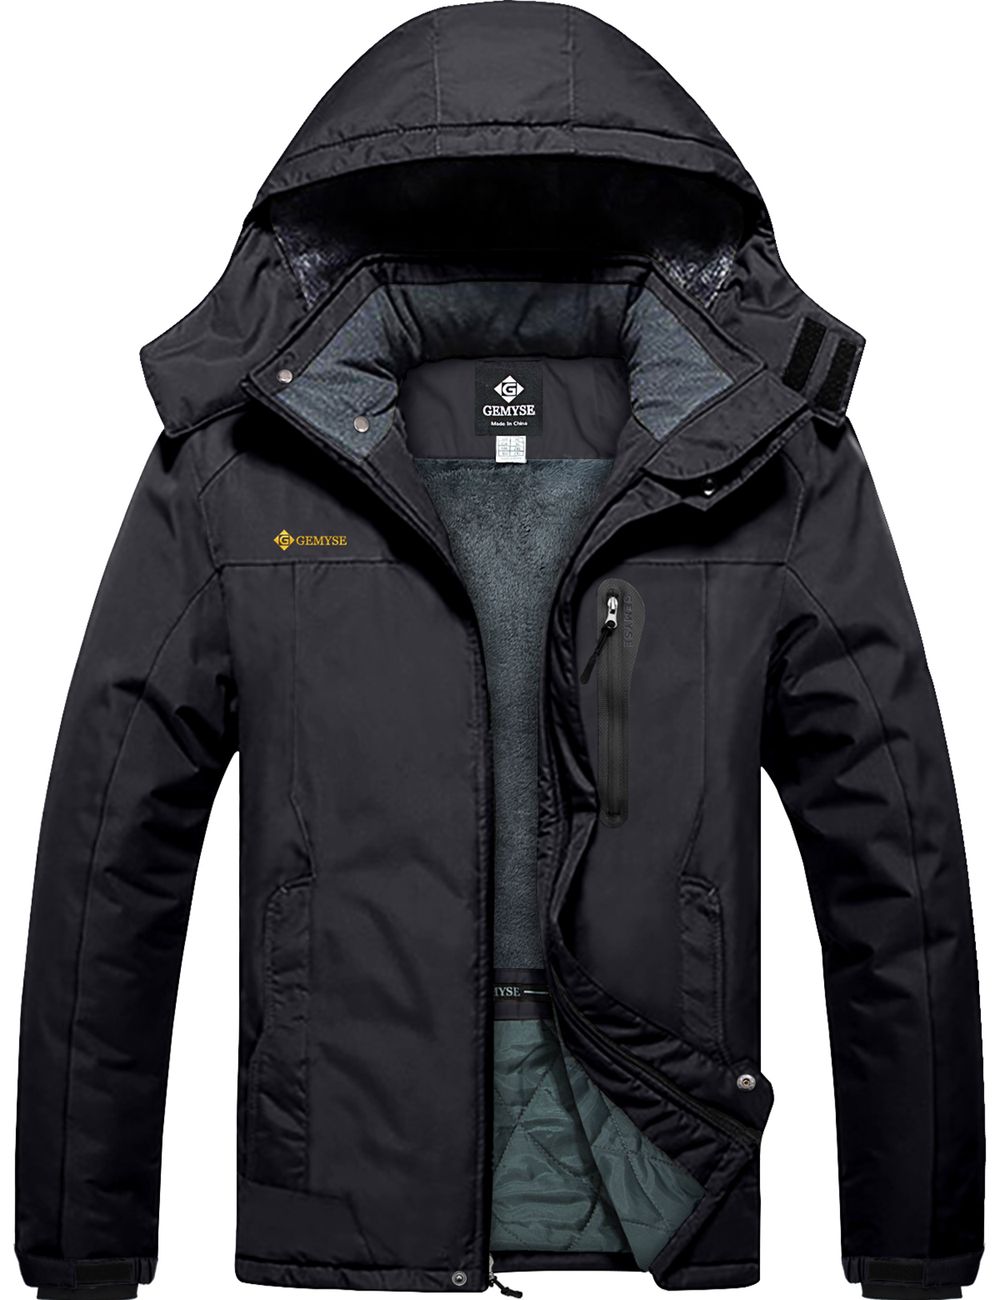 8FANS & GEMYSE Co-branded Men's Mountain Waterproof Ski Snow Jacket Winter Windproof Rain Jacket